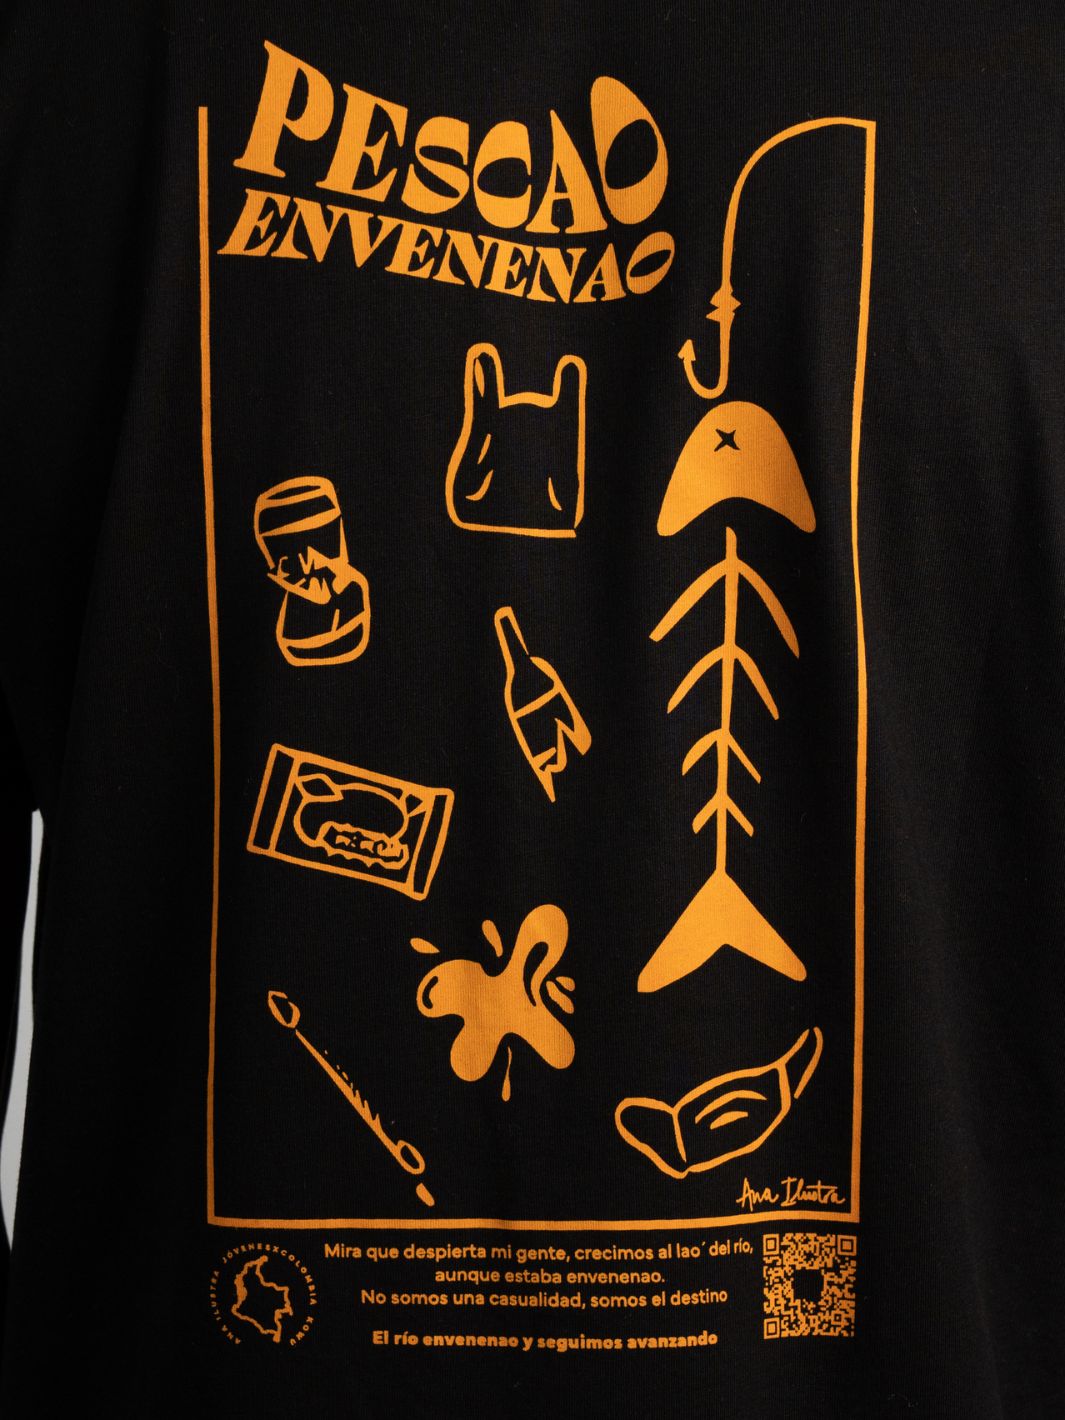 Camiseta Unisex Pescao Envenenao Negra